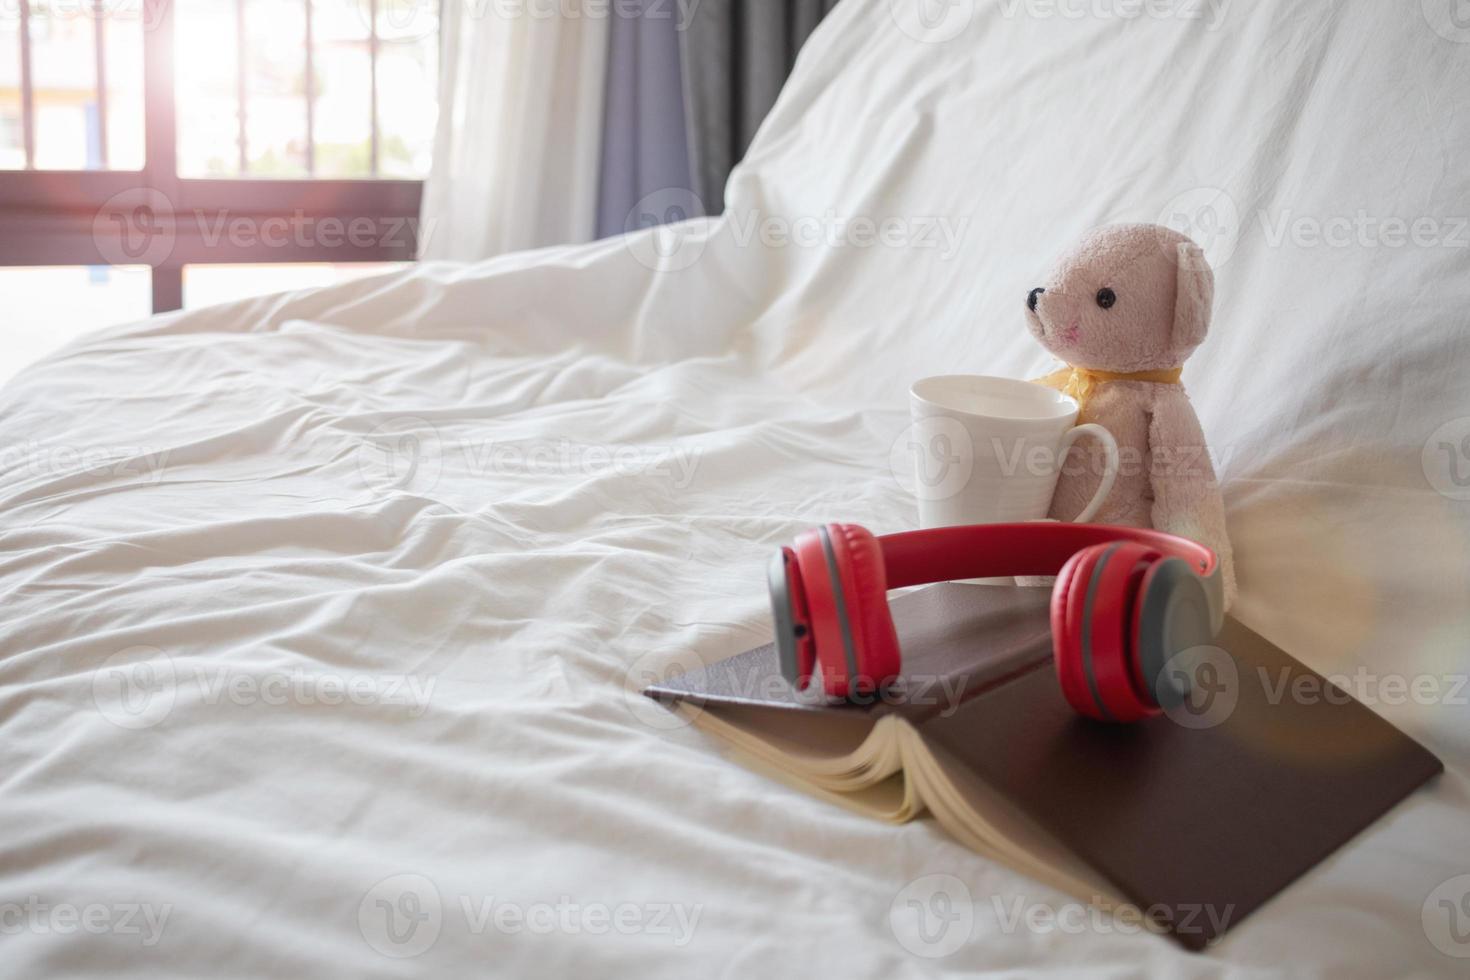 una cuffia rossa è posizionata su un libro vicino a un orsacchiotto rosa sul letto al mattino, pronto per un comodo riposo. un paio di cuffie e un libro poggiano sulla biancheria bianca in camera da letto. foto